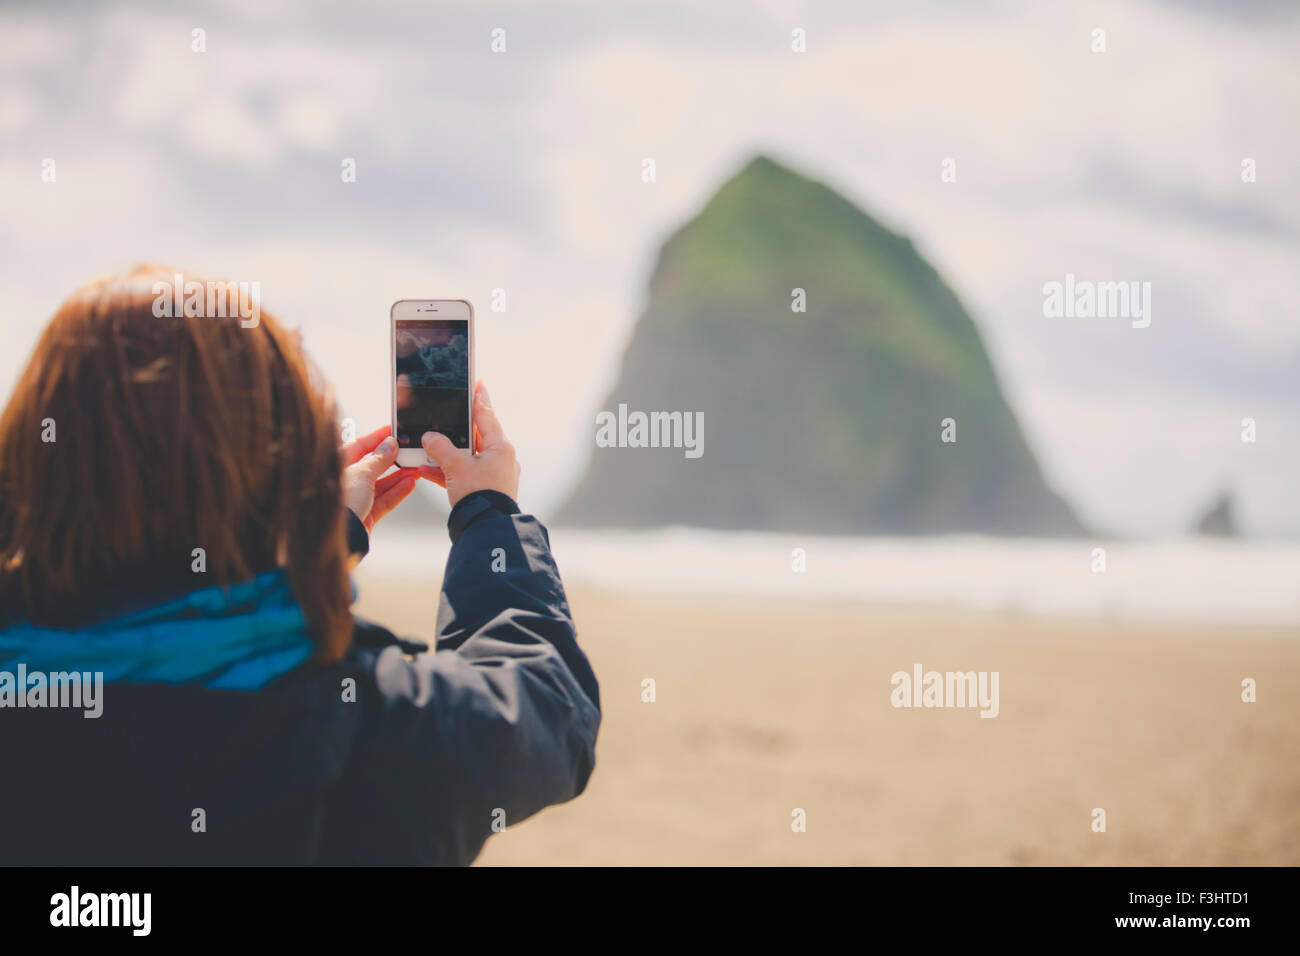 Une jeune femme utilise son smartphone pour prendre une photo de Haystack Rock at Cannon Beach. Banque D'Images